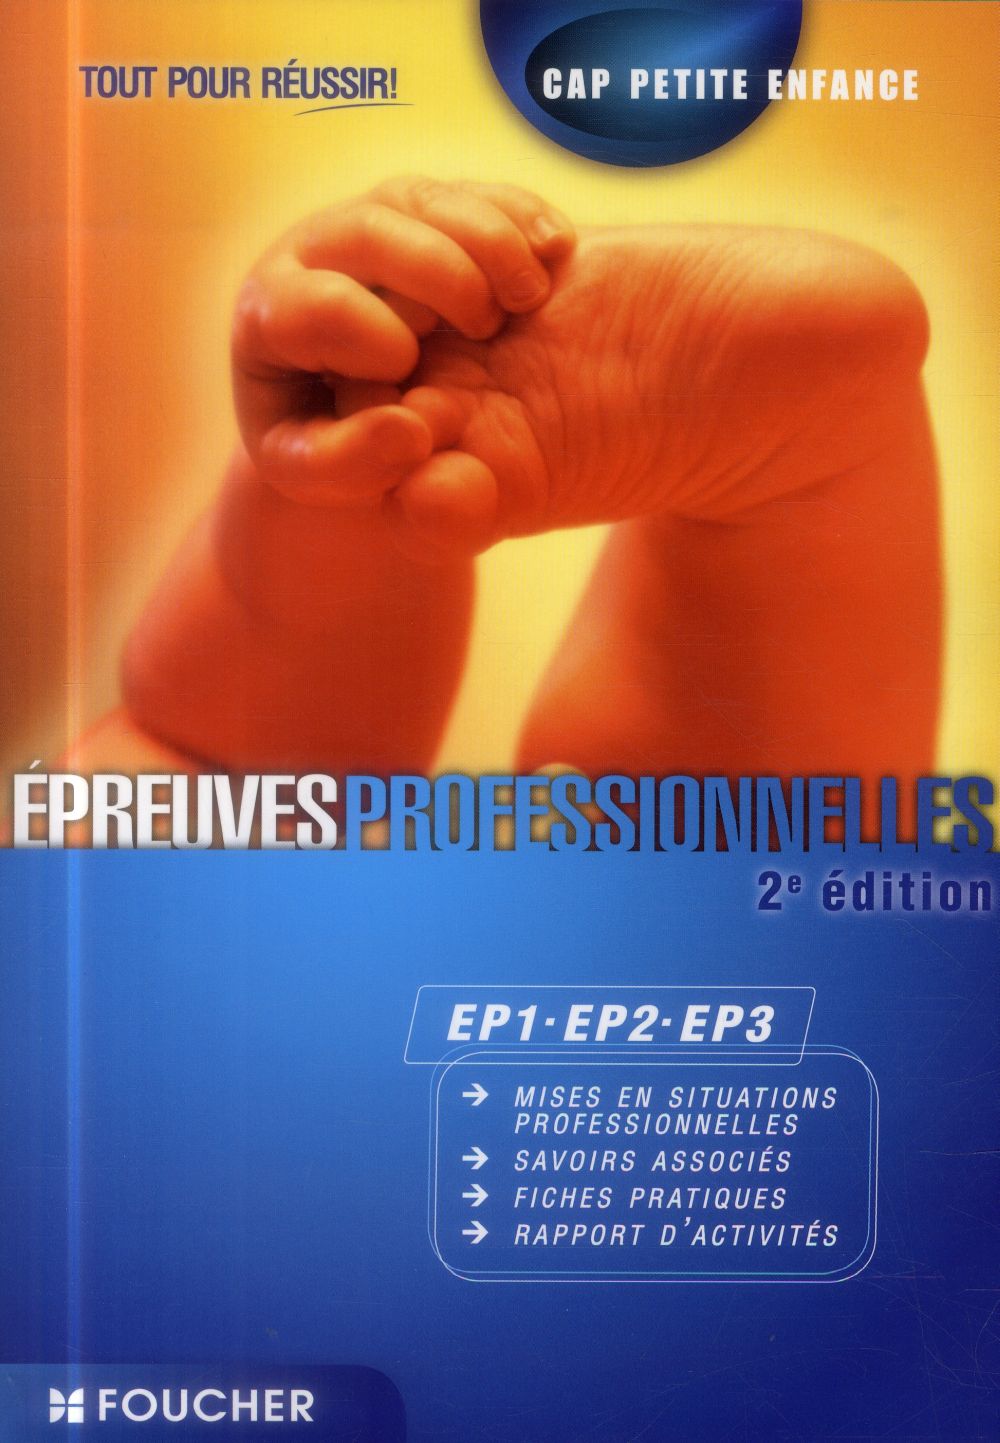 EPREUVES PROFESSIONNELLES EP1-EP2-EP3 CAP PETITE ENFANCE TOUT POUR REUSSIR 2E EDITION